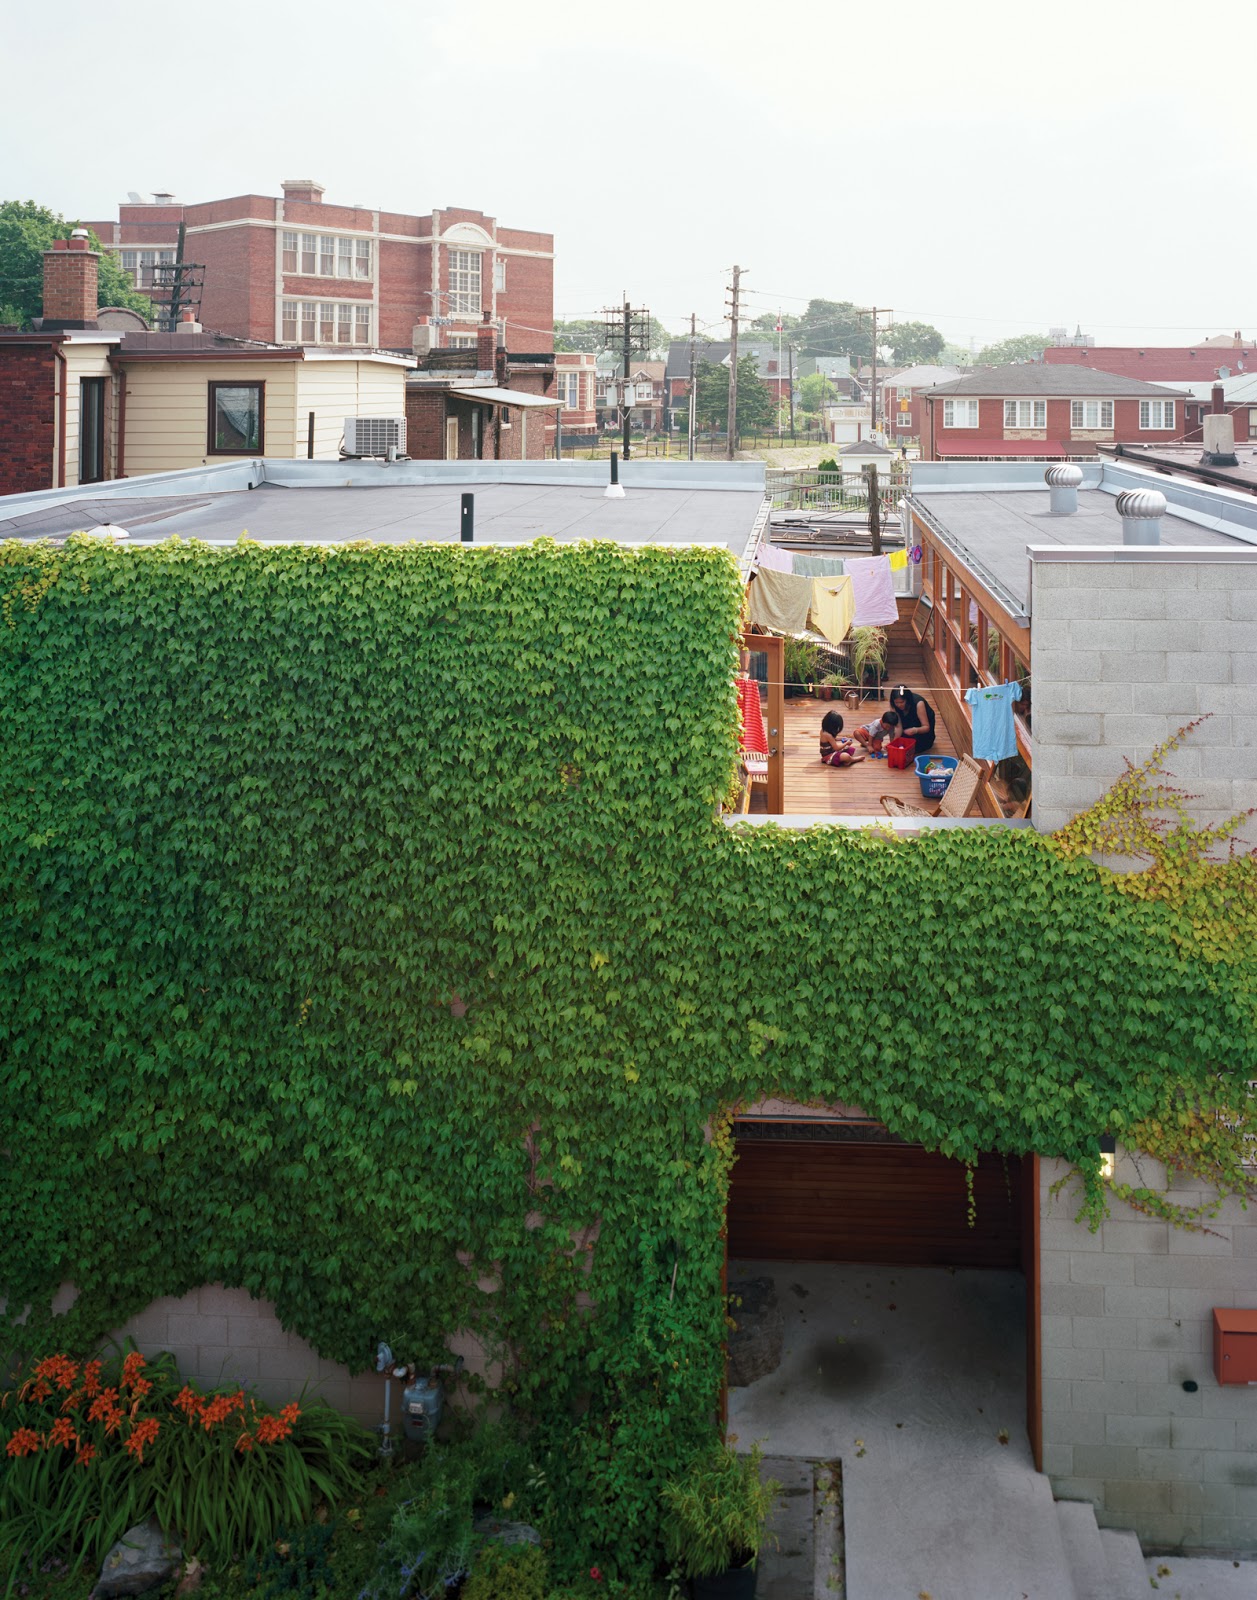 Stadt-Haus in Toronto - Umbau einer Fabrik zum ökologisch nachhaltigem Heim